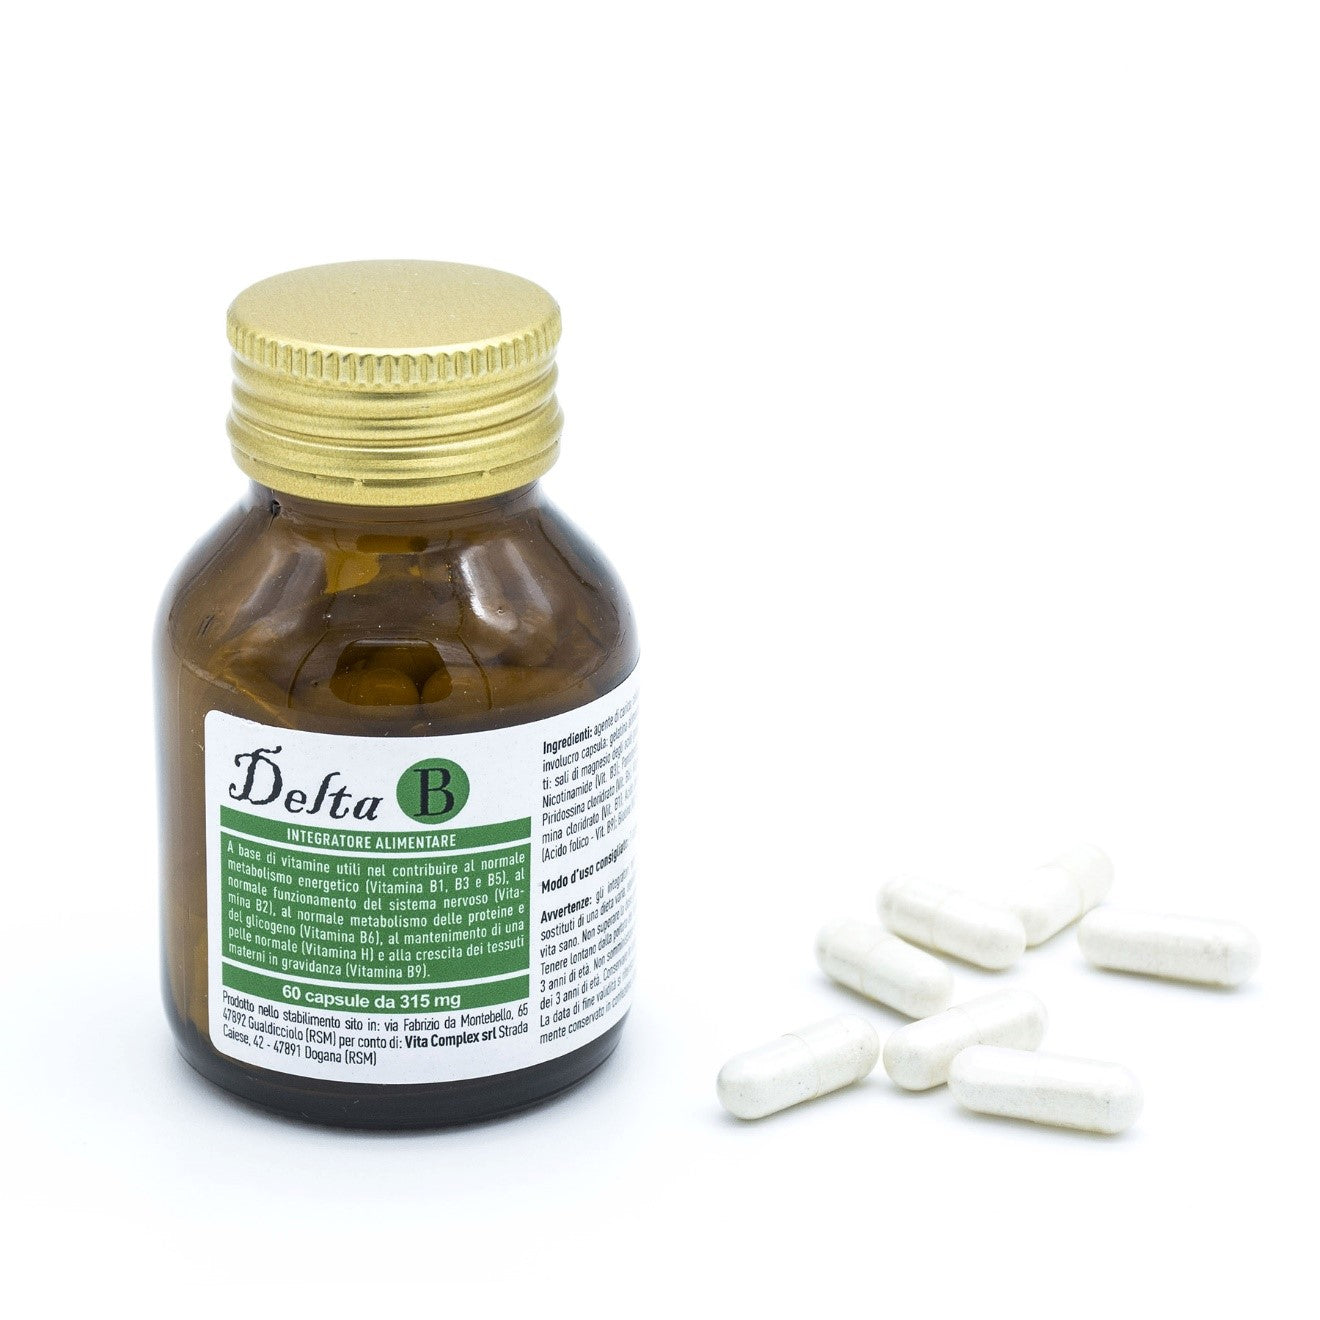 Gélules de Delta B | Vita Complex, riche en vitamines B essentielles